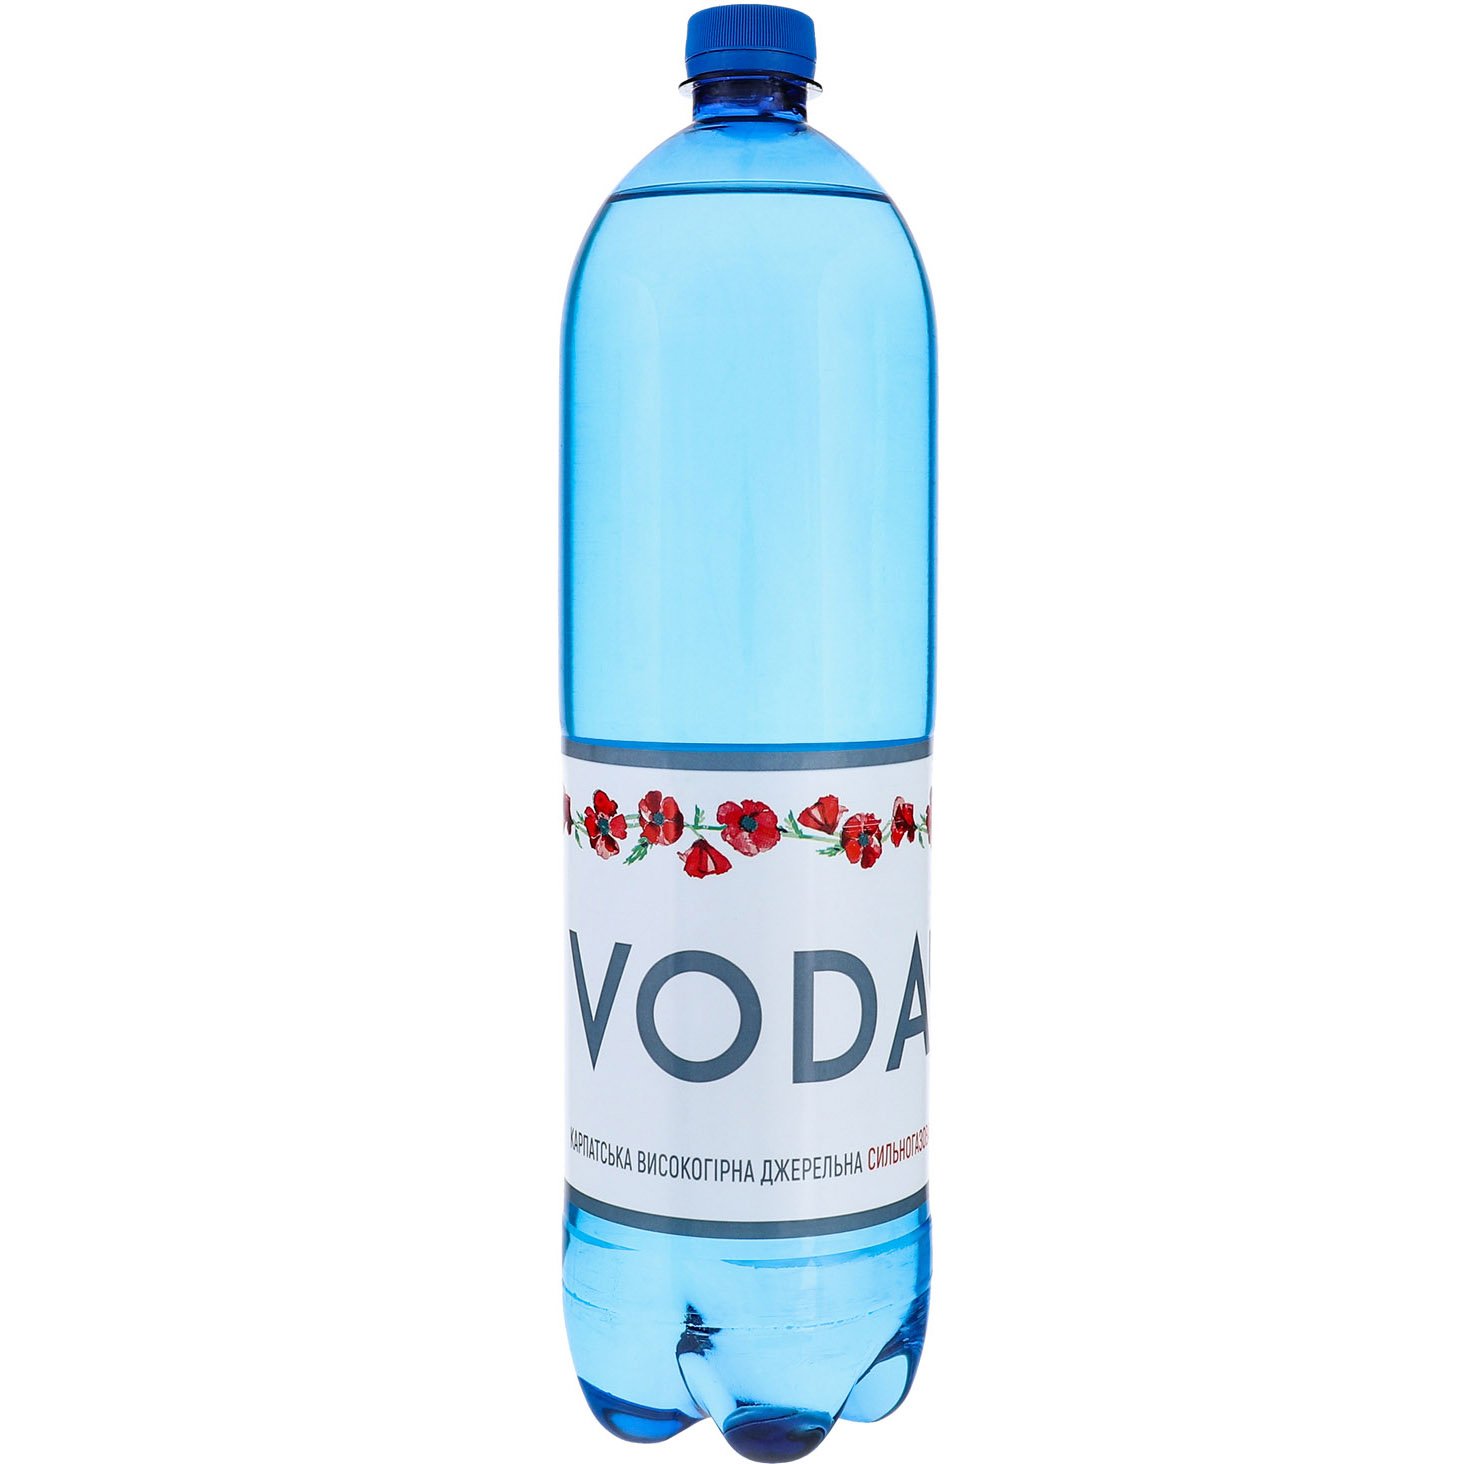 Вода питьевая Voda UA Карпатская высокогорная родниковая сильногазированная 1.5 л - фото 1